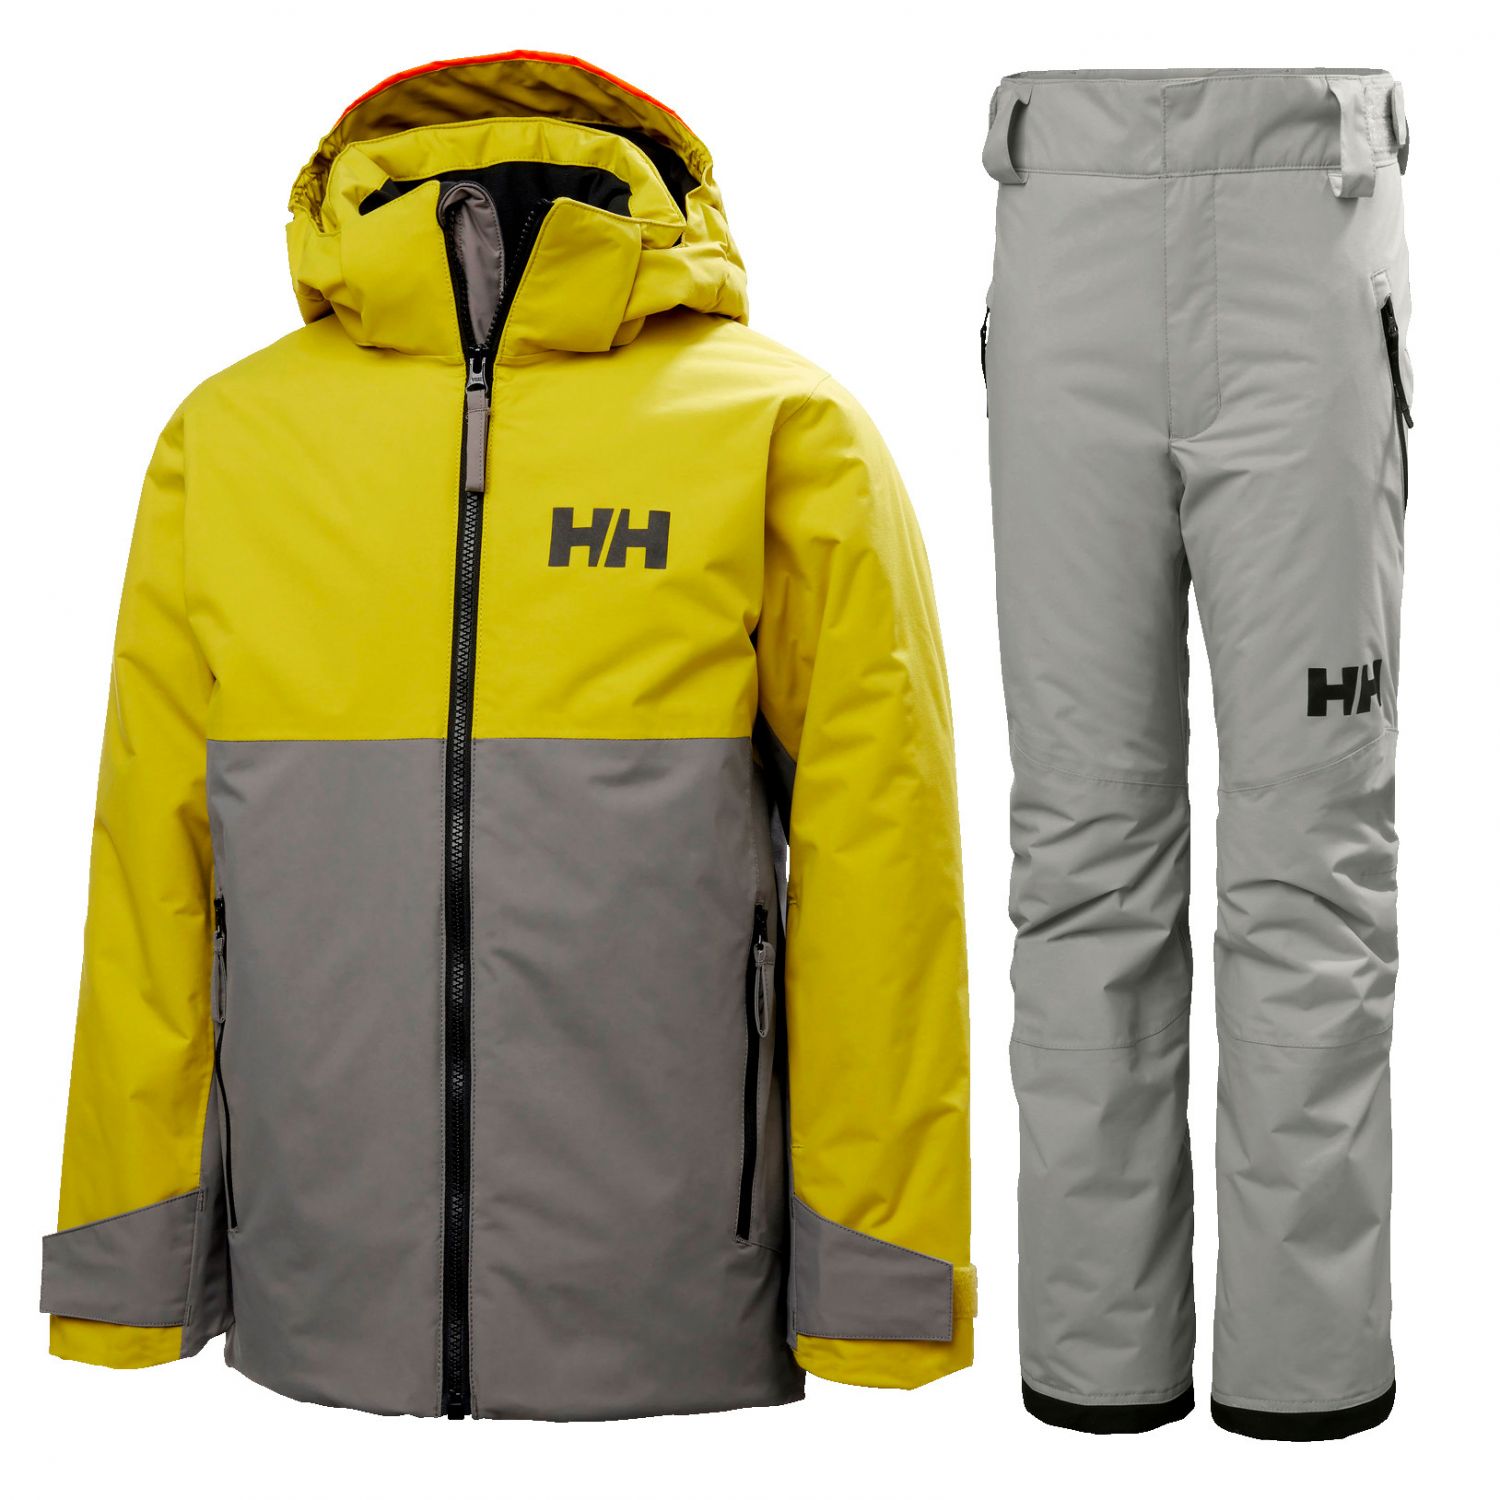 Brug Helly Hansen Traverse/Legendary skisæt, junior, grå til en forbedret oplevelse